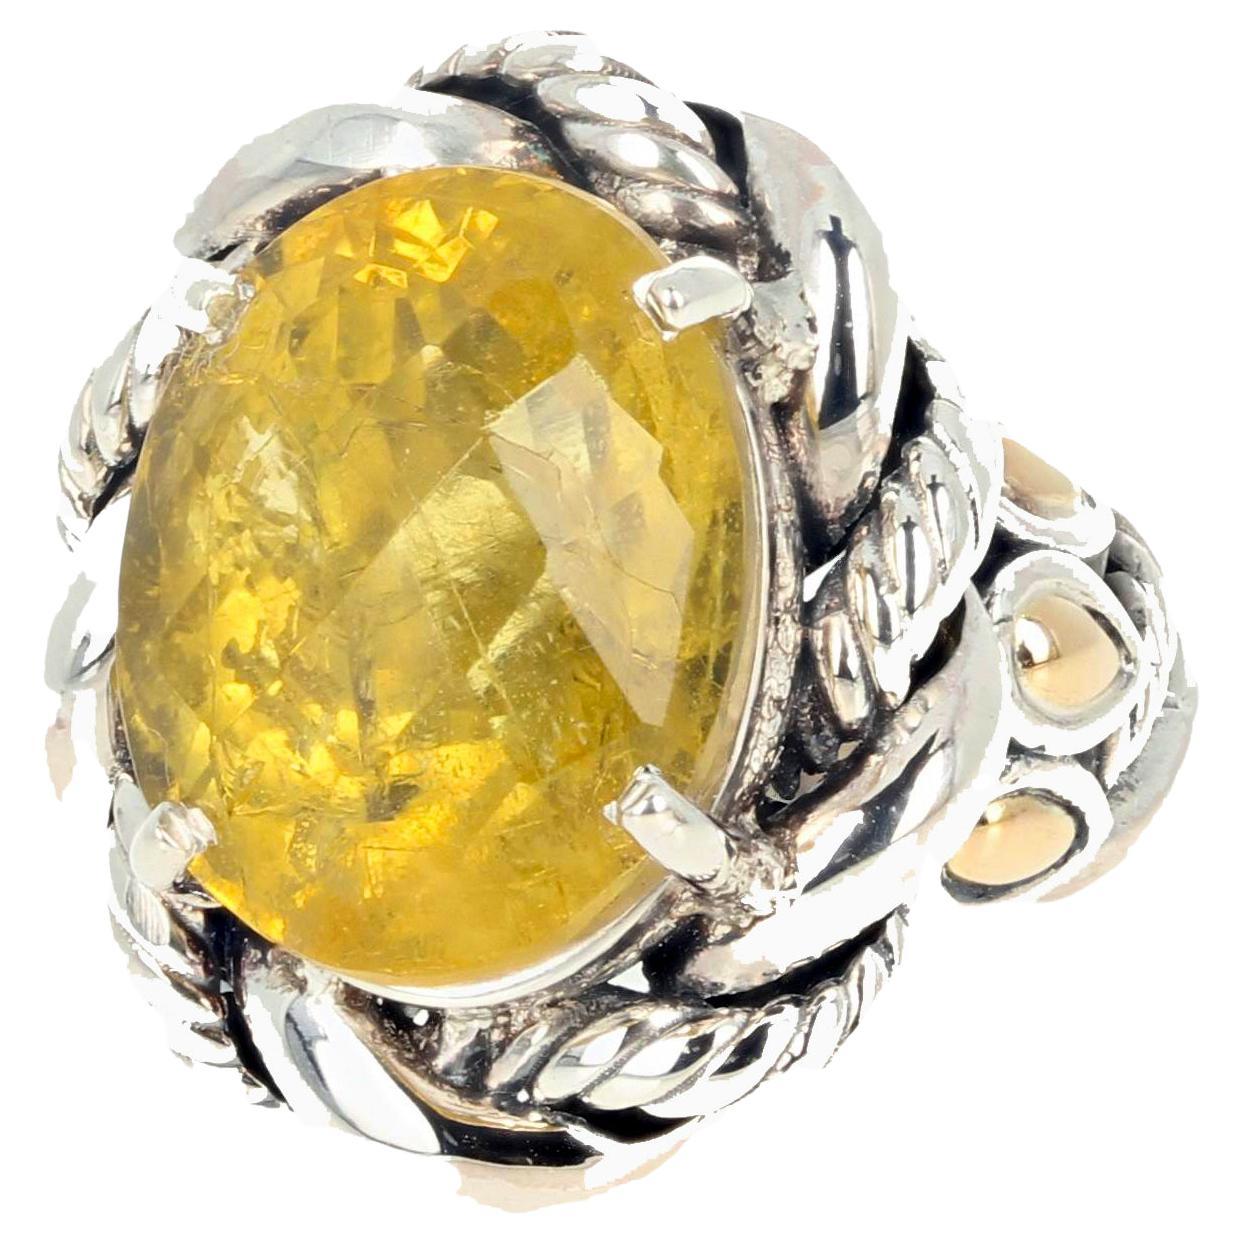 Dieser faszinierende Ring besteht aus 6,84 Karat nebligem, aber glitzerndem, natürlichem, schachbrettartig geschliffenem, ovalem, gelbem Beryll.  Die fleckigen Einschlüsse in diesem Edelstein machen ihn so schön und anders.  Dies ist Sterling Silber